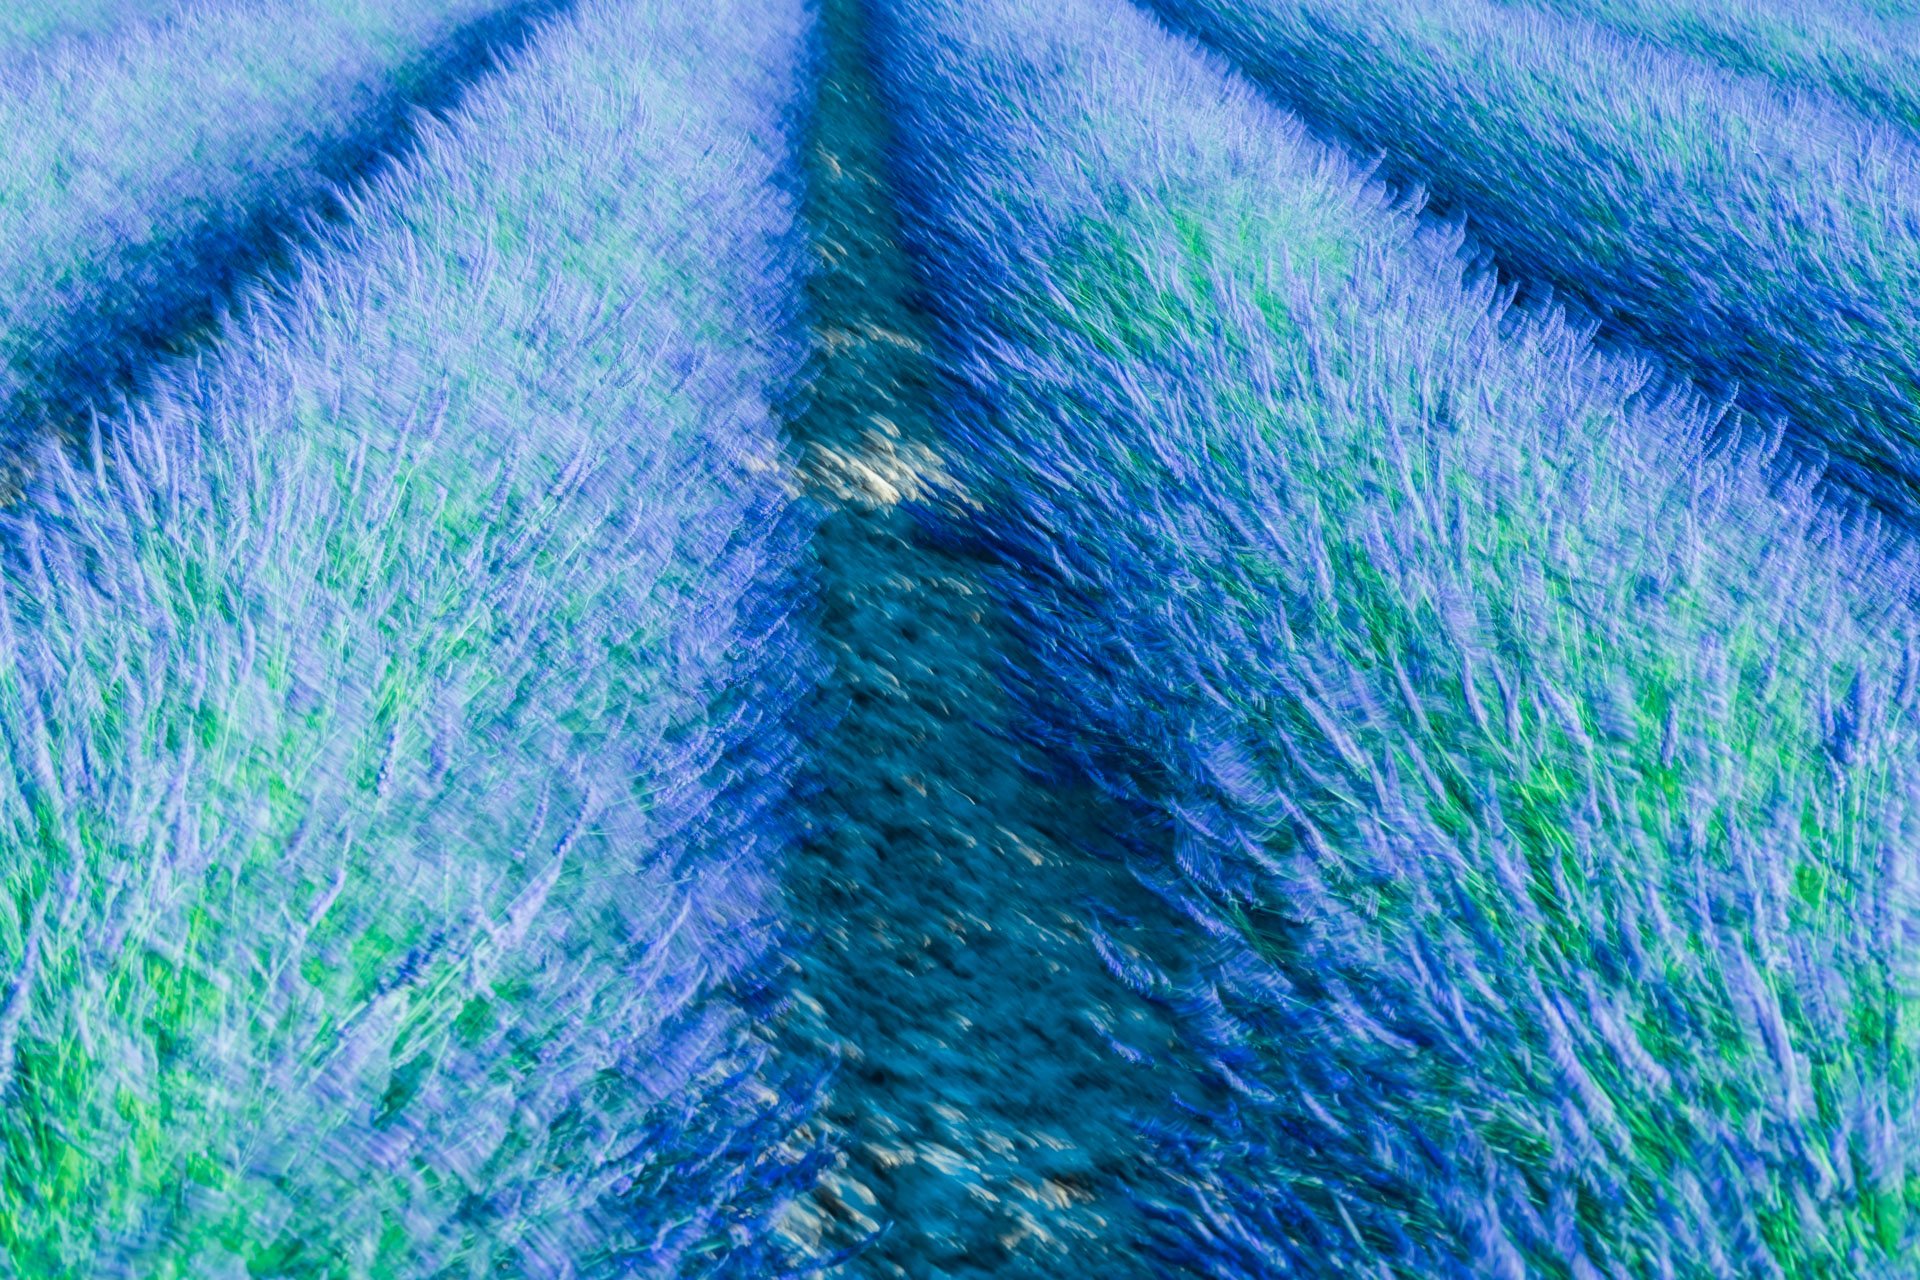 aweb2-lavender blues-provence.jpg